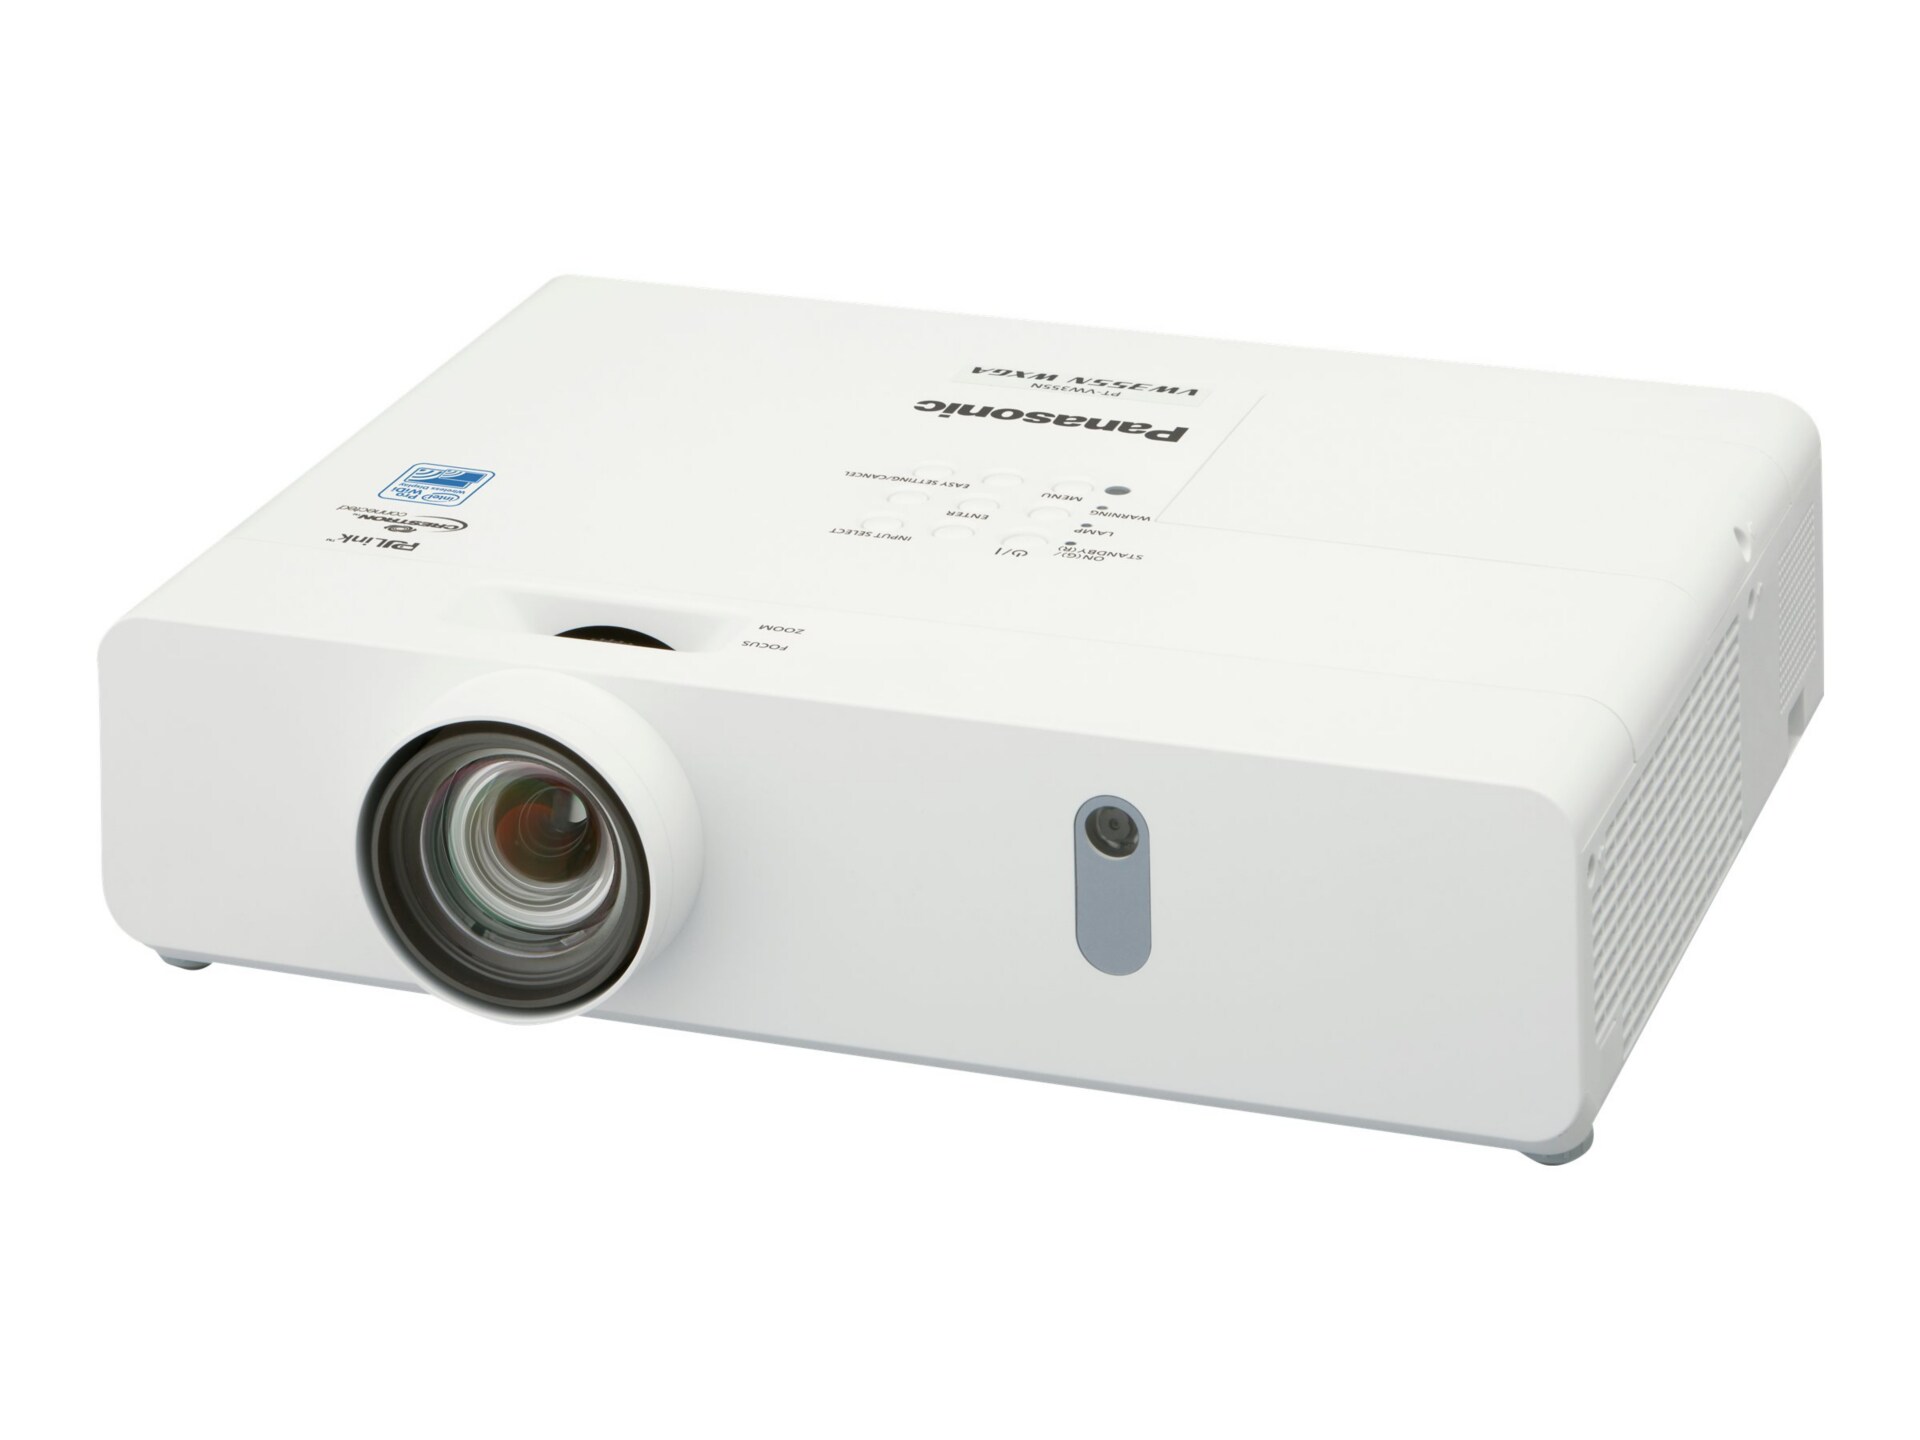 Panasonic PT-VX425NU - 3LCD projector - WiDi / 802.11a/b/g/n wireless / Miracast Wi-Fi Display